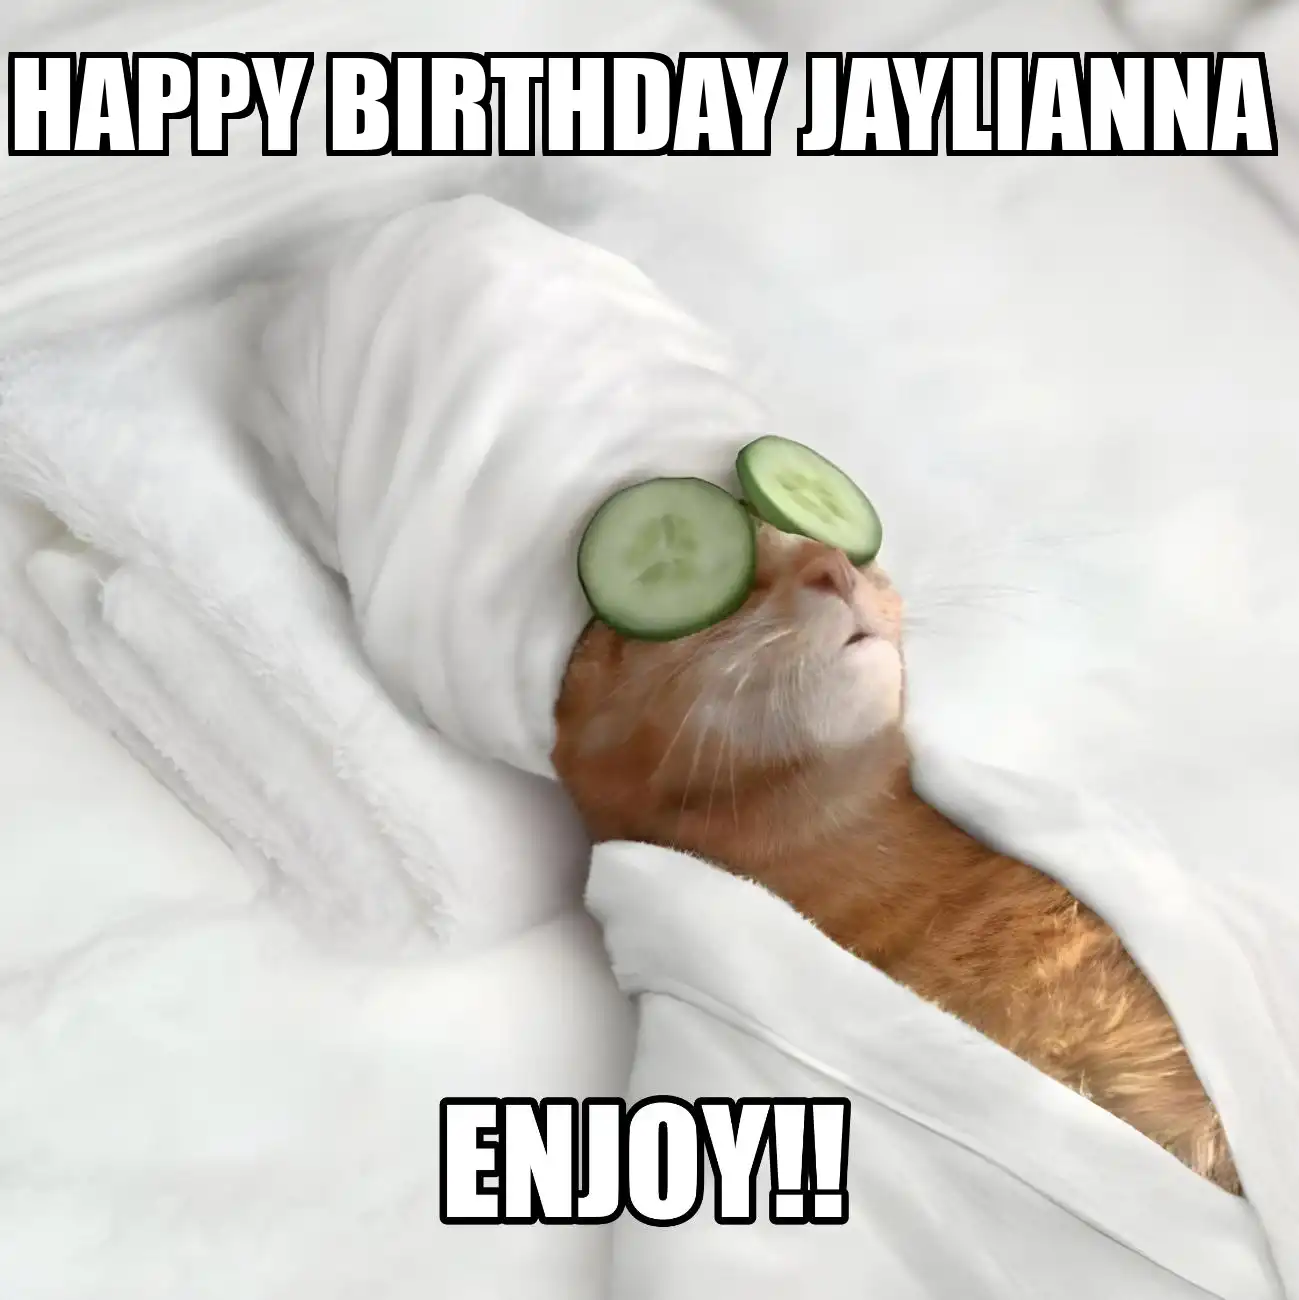 Happy Birthday Jaylianna Enjoy Cat Meme